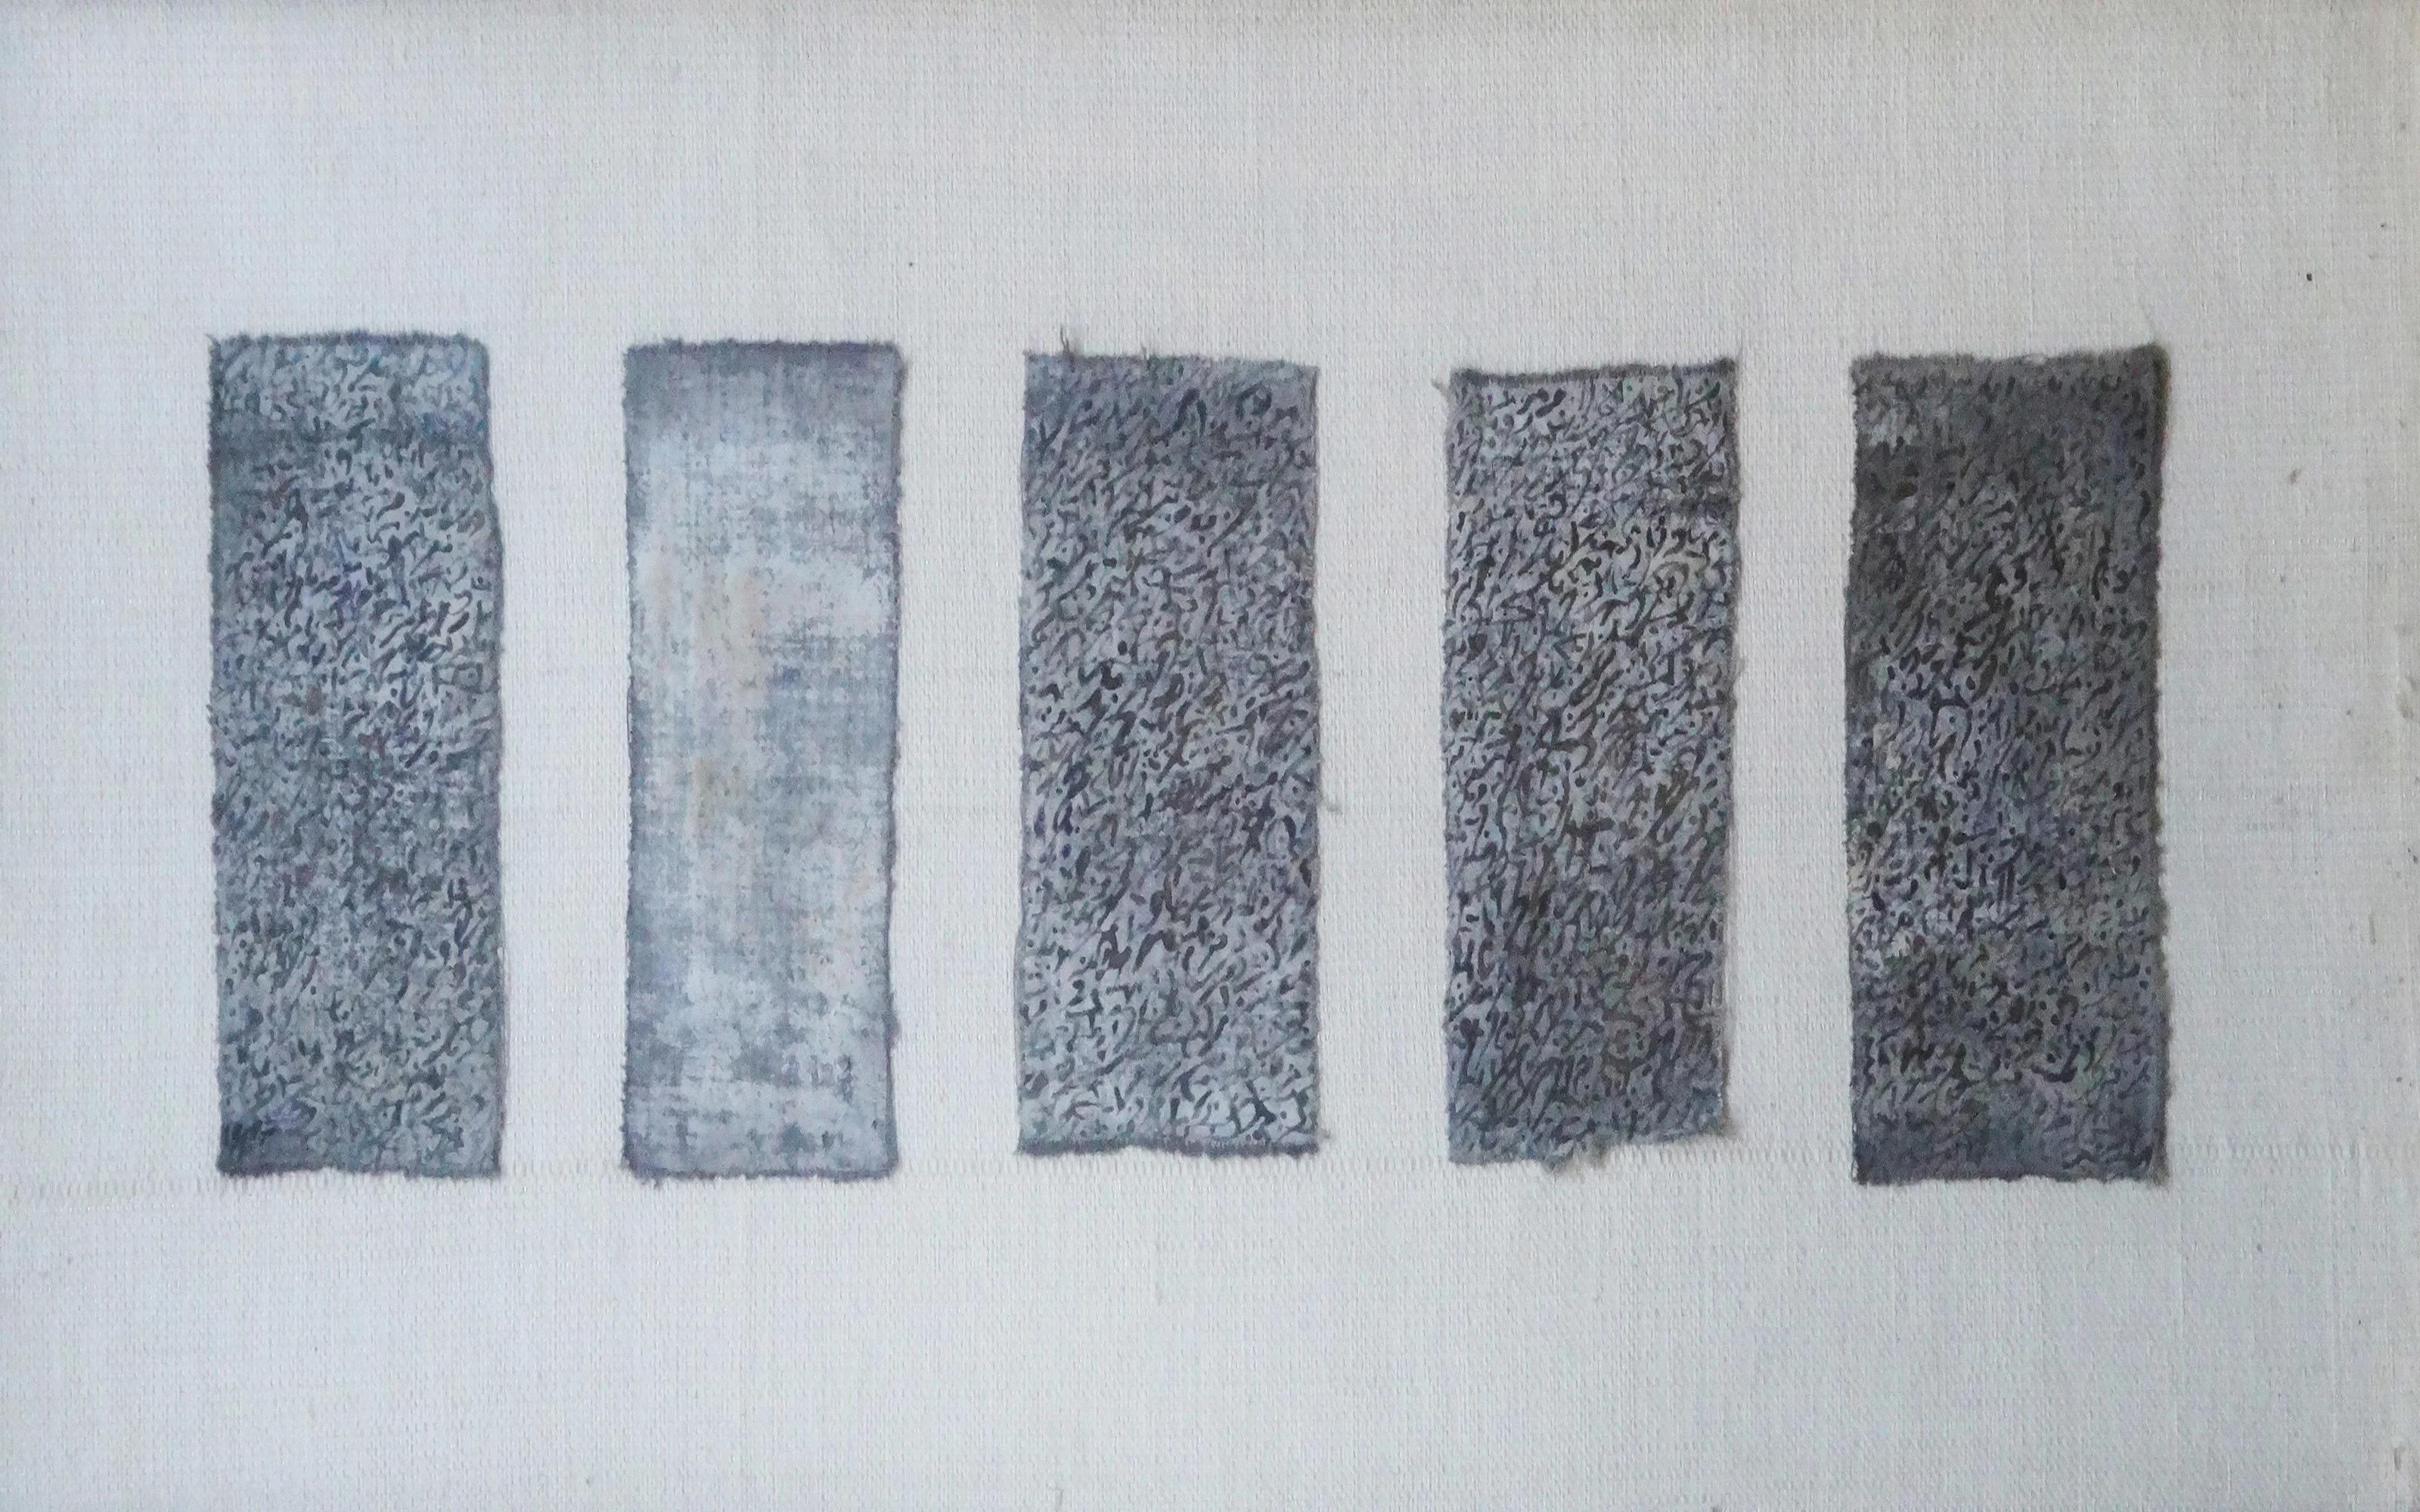 "Abstract Script" Tinte auf Stoff Gemälde 10" x 2"4 Zoll von Mohamed Monaiseer

Serie Trinity (2015)

In dieser Arbeit entwickle ich eine persönliche Philosophie der Dreifaltigkeit - die Vereinigung von drei in einem. Die Dreifaltigkeit besteht aus